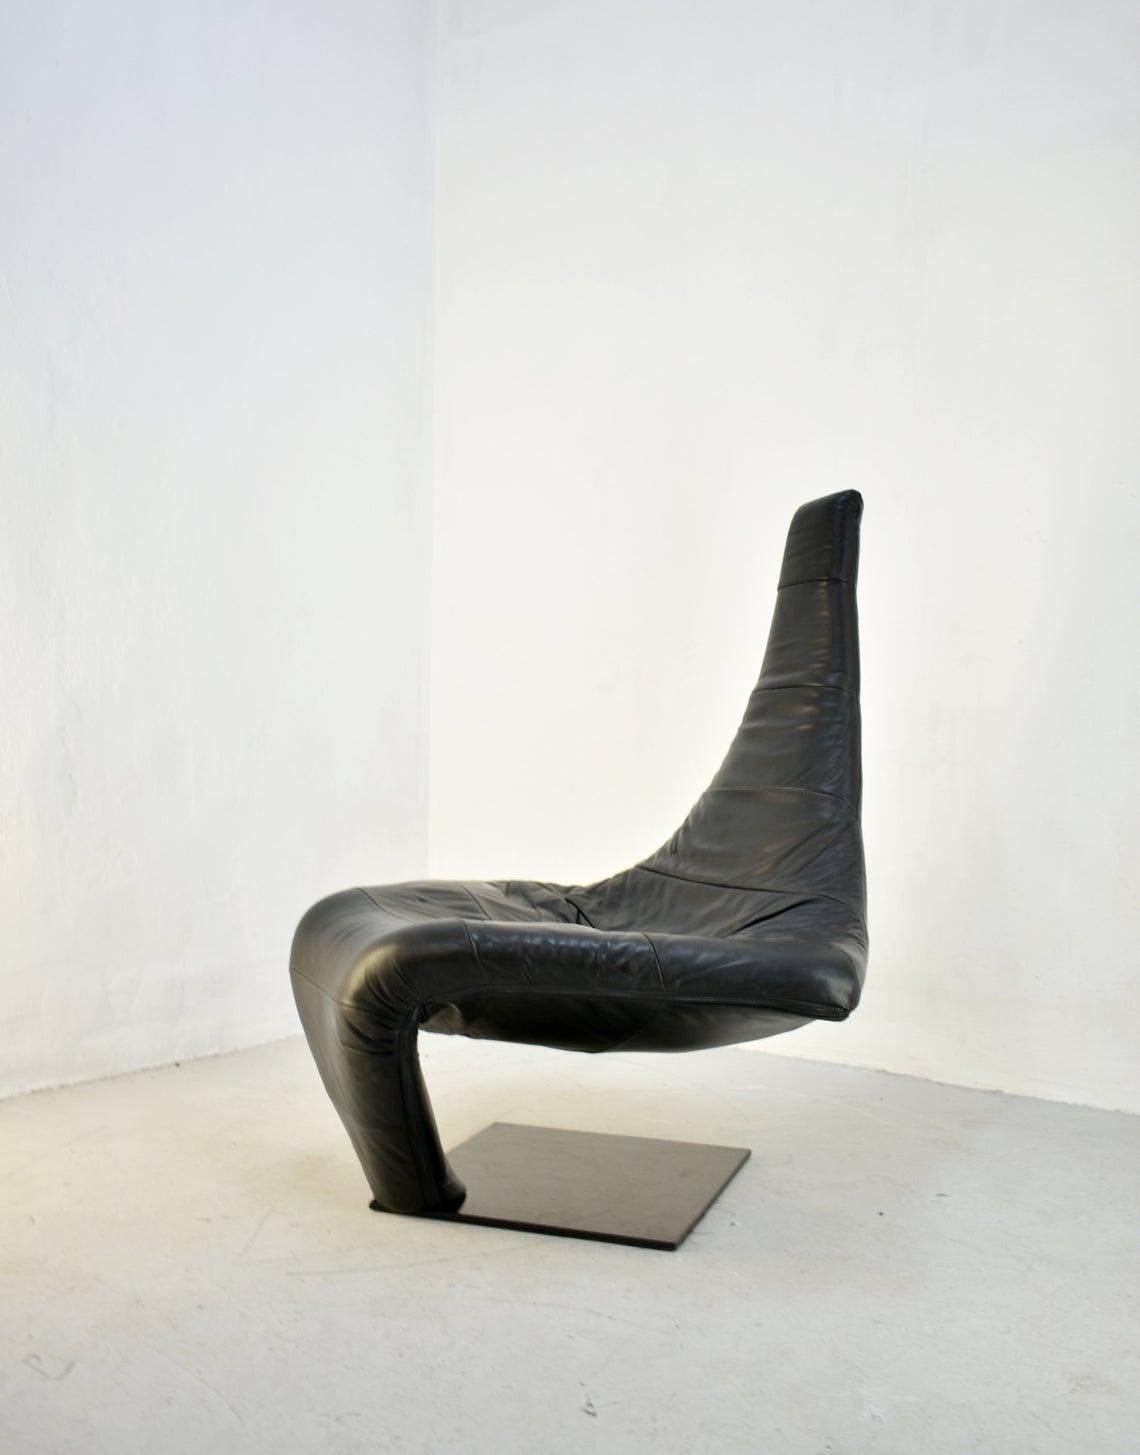 Metal Lounge Chair in Black Leather, Model 'Turner' by Jack Crebolder for Harvink